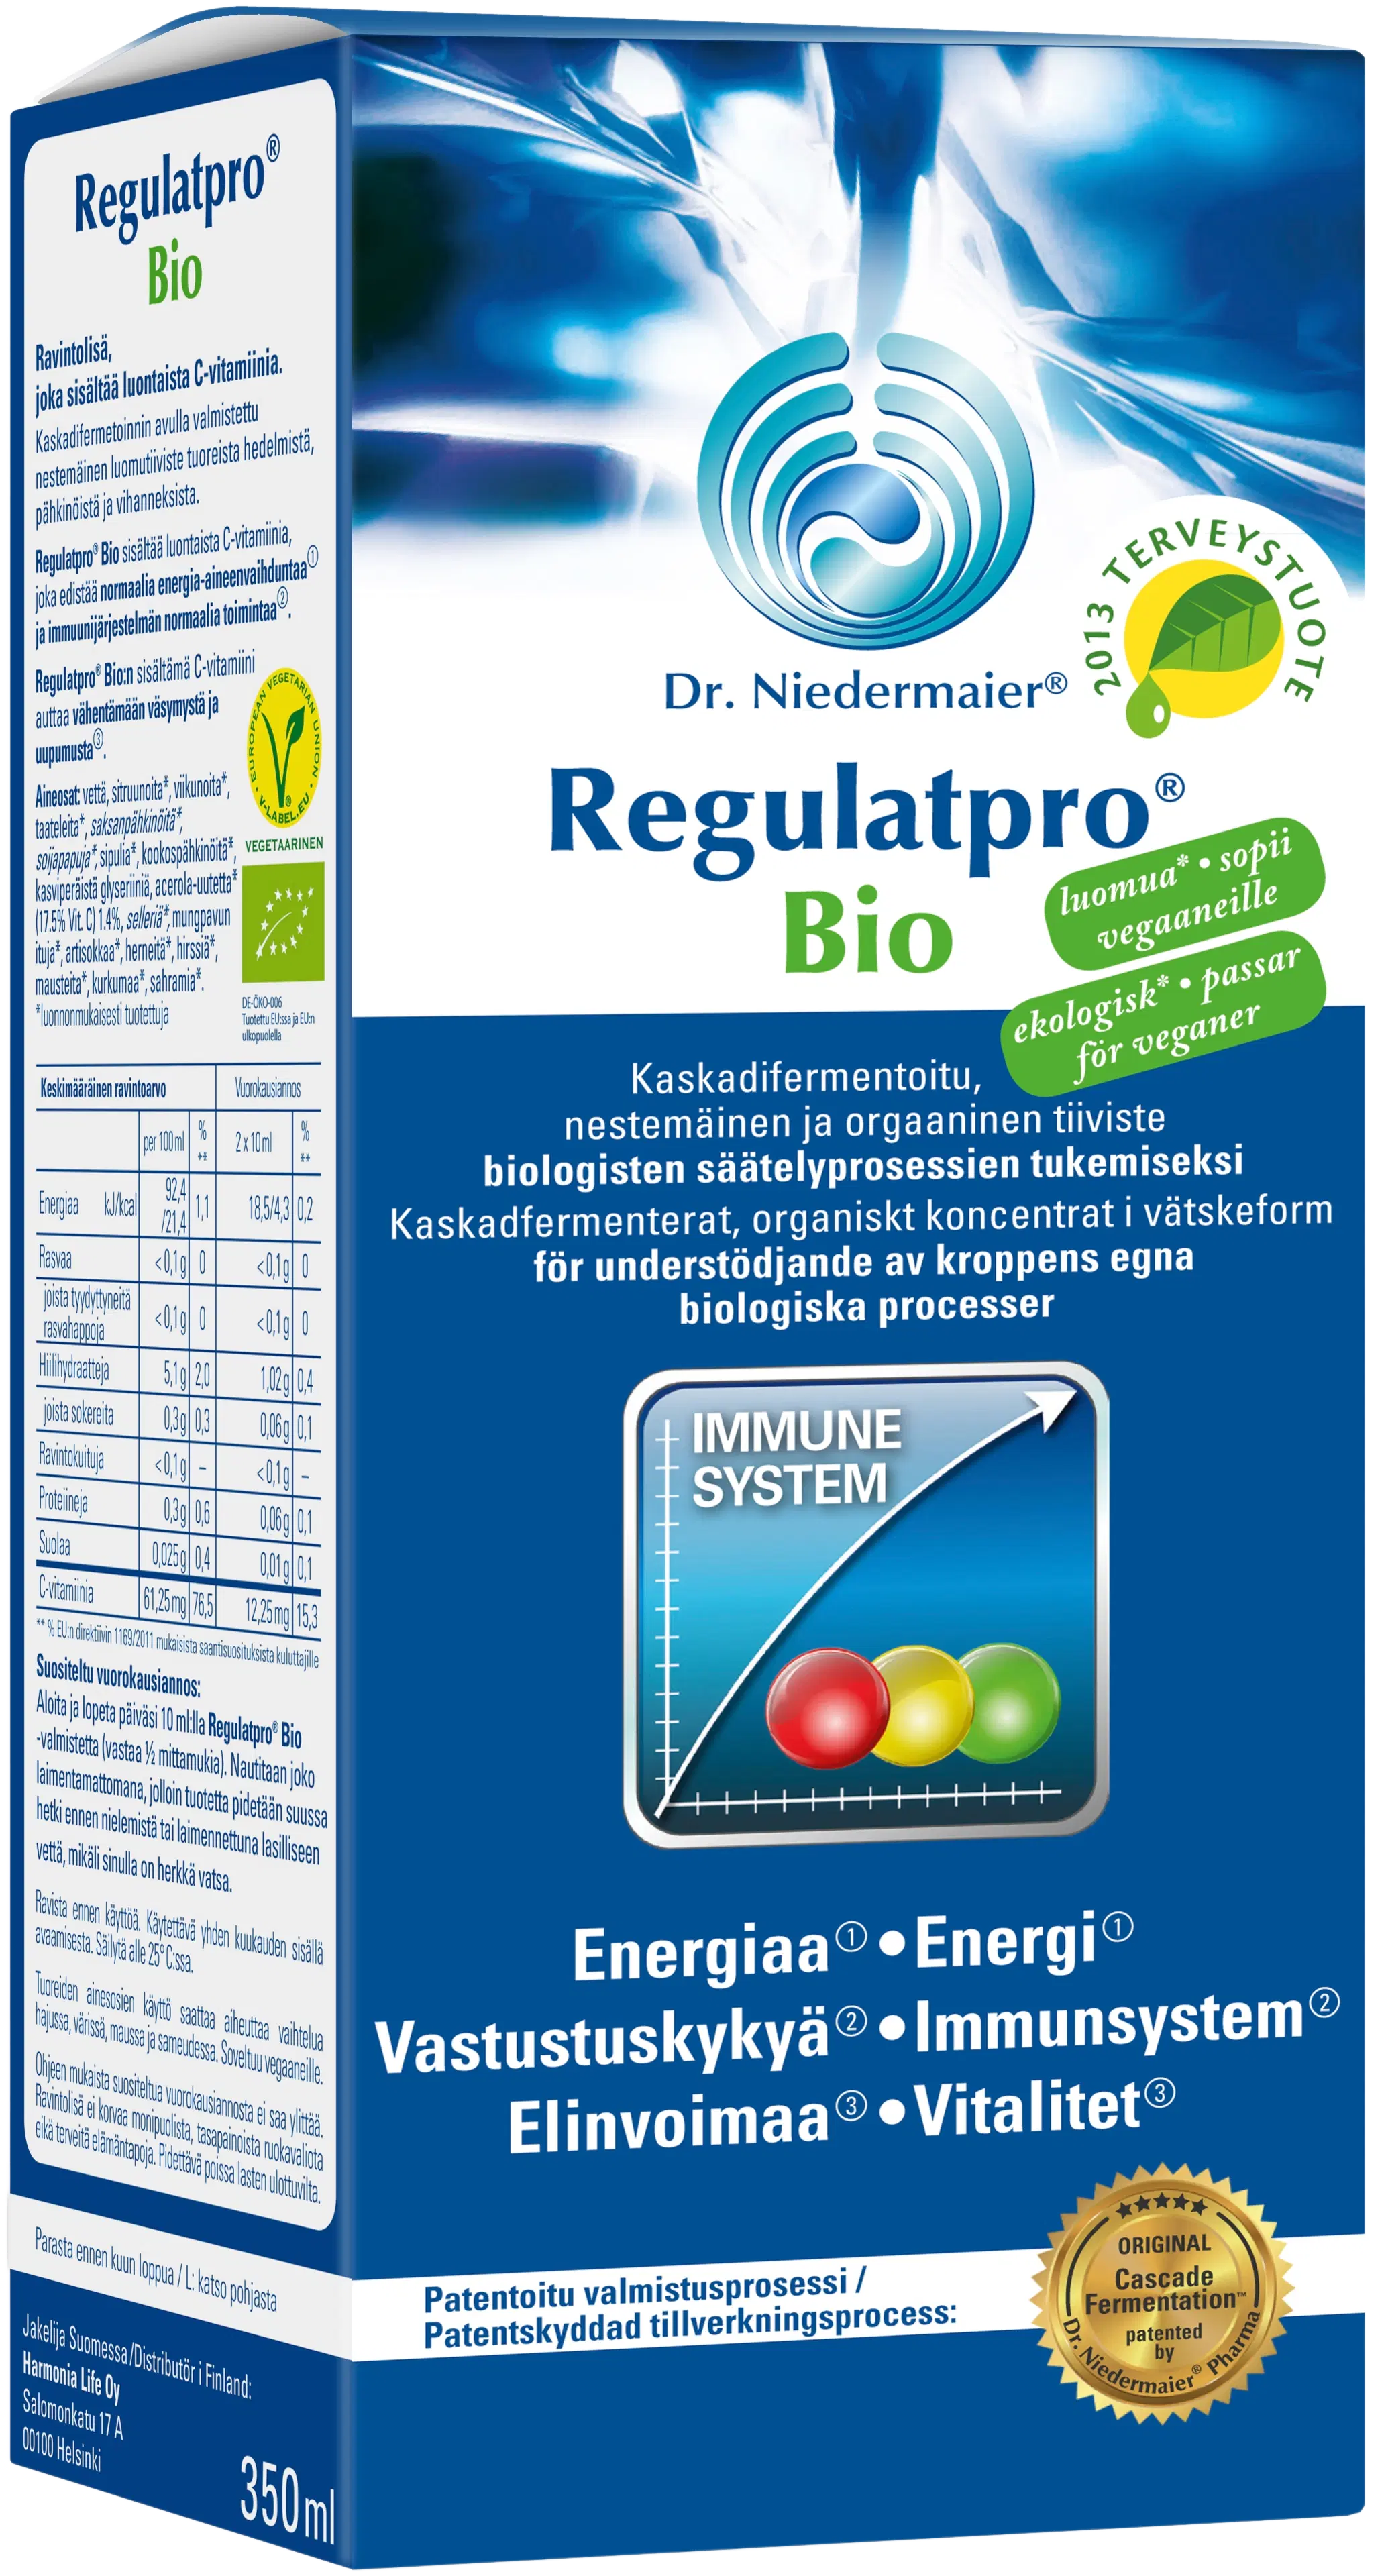 RegulatPro Bio Luomu Ravintolisä biologisten säätelyprosessien tukemiseksi 350ml